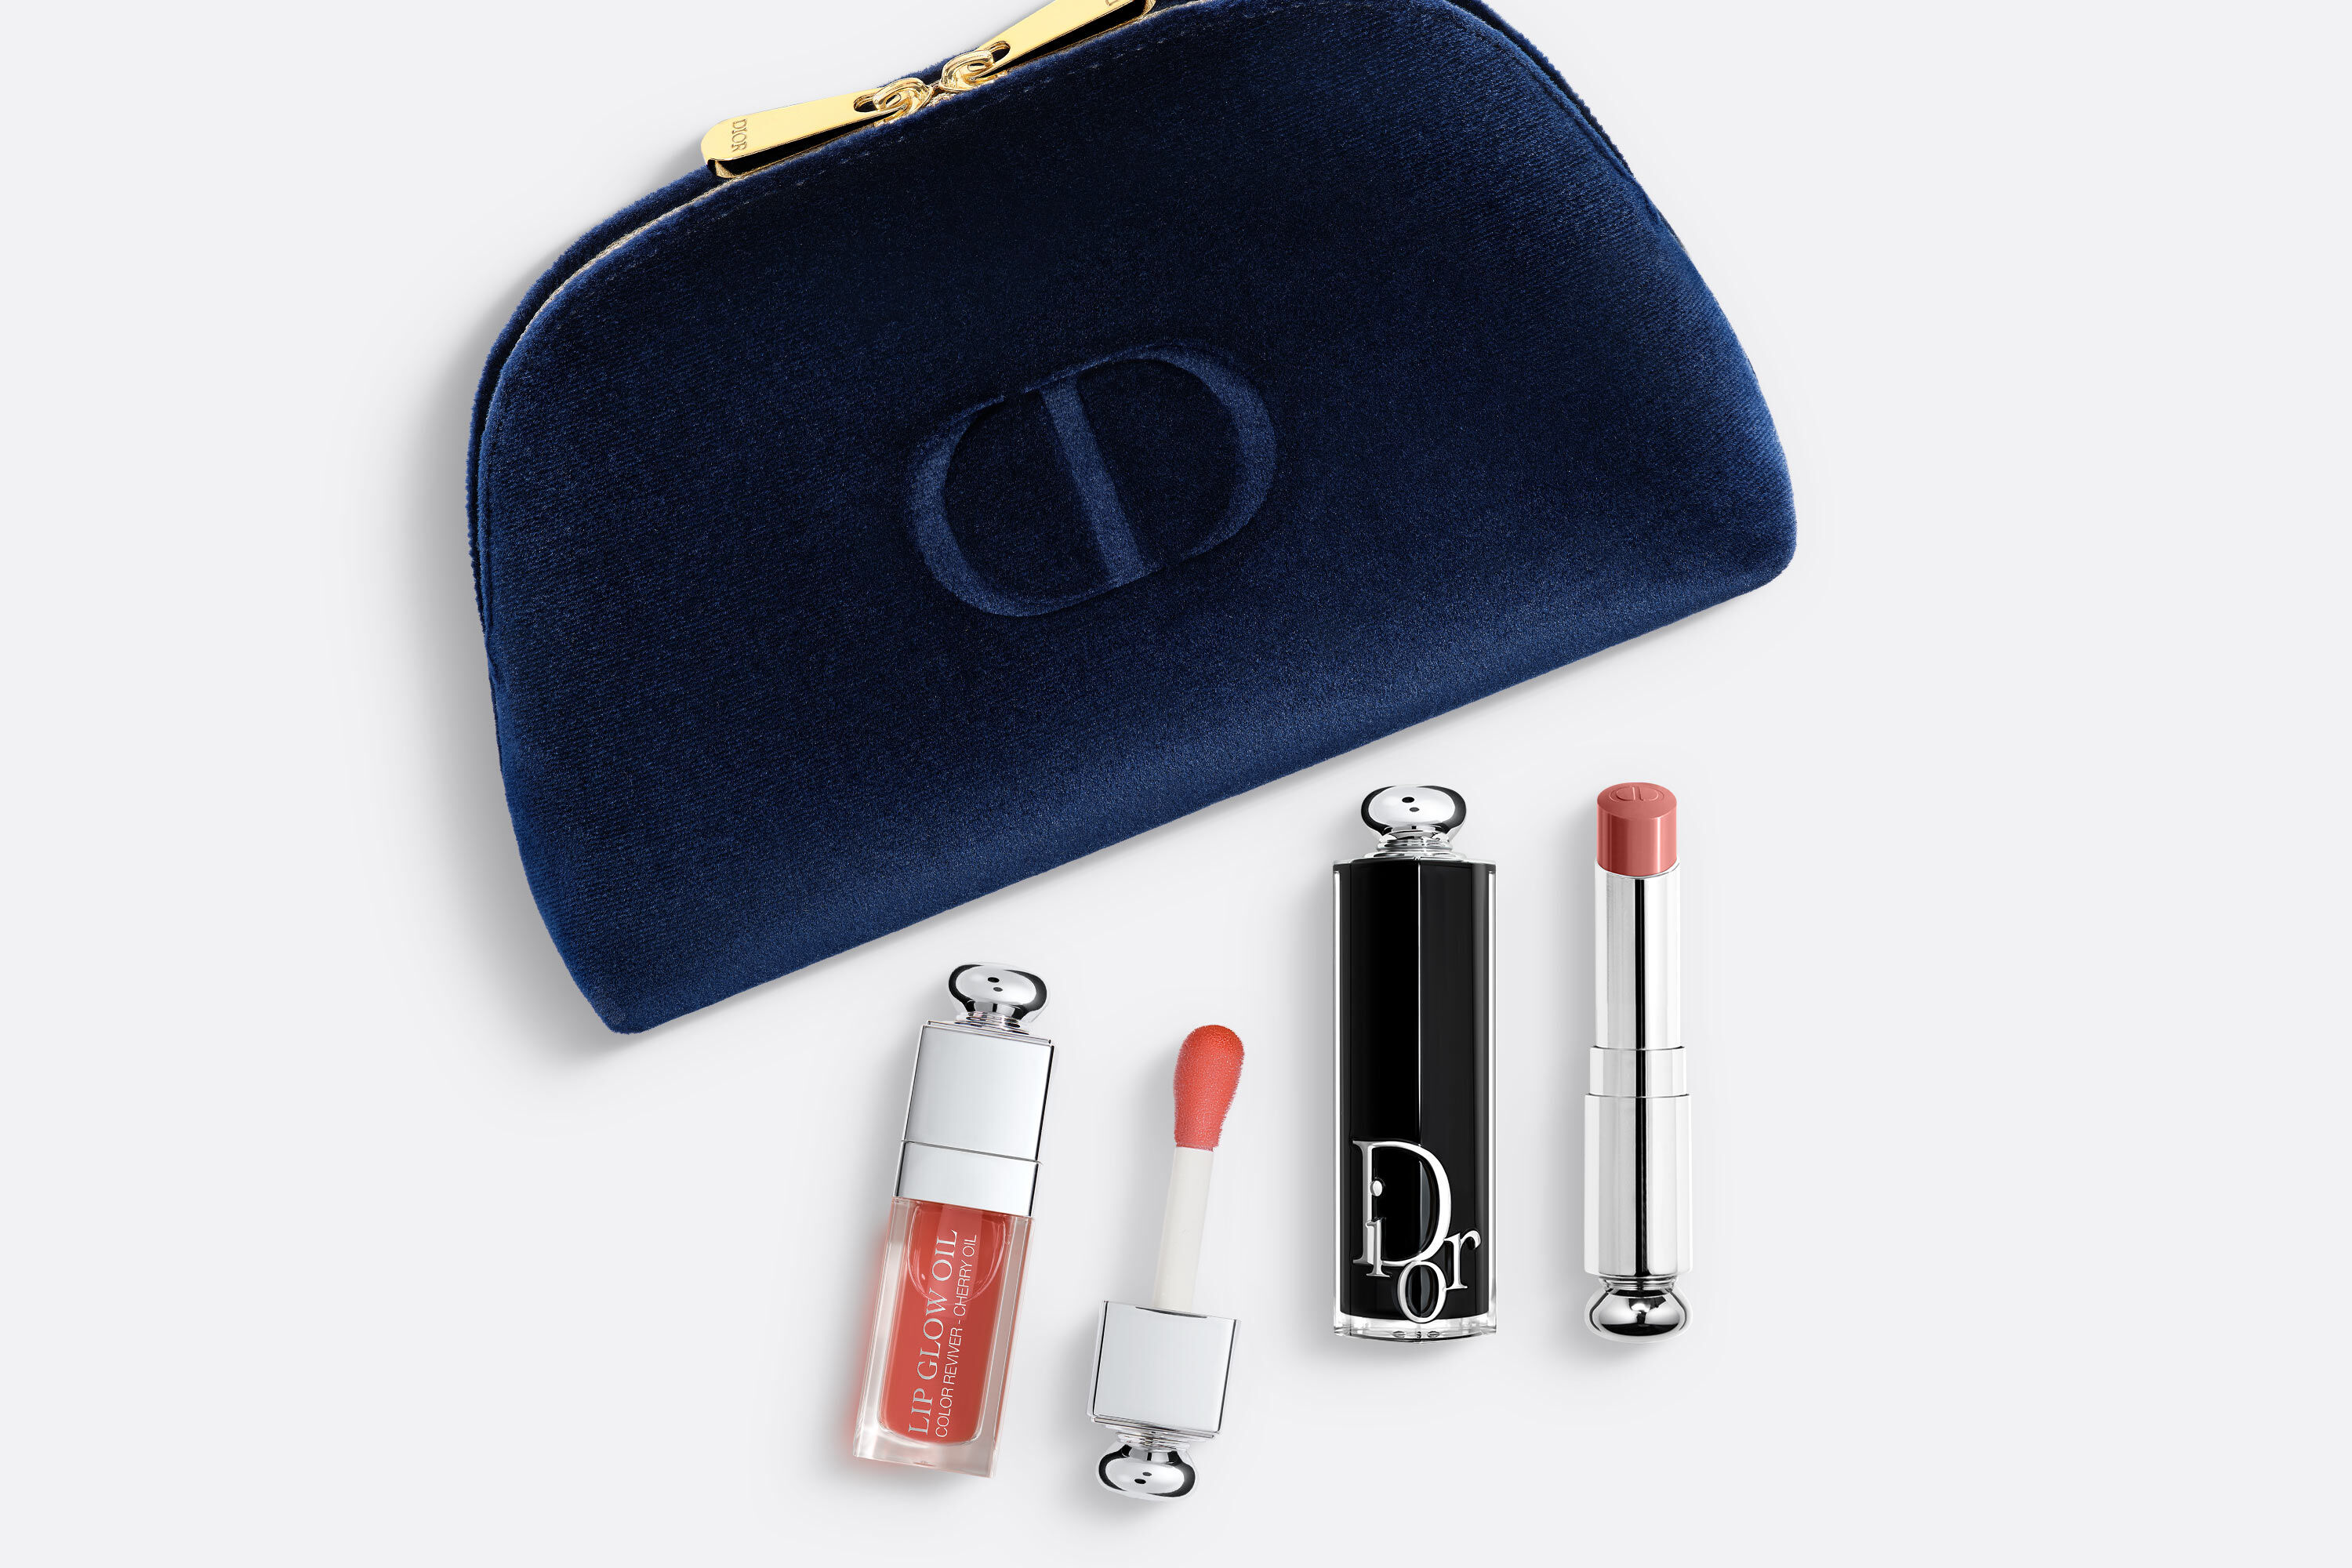 Dior Addict LIP EXPERTS DUO 2個セット